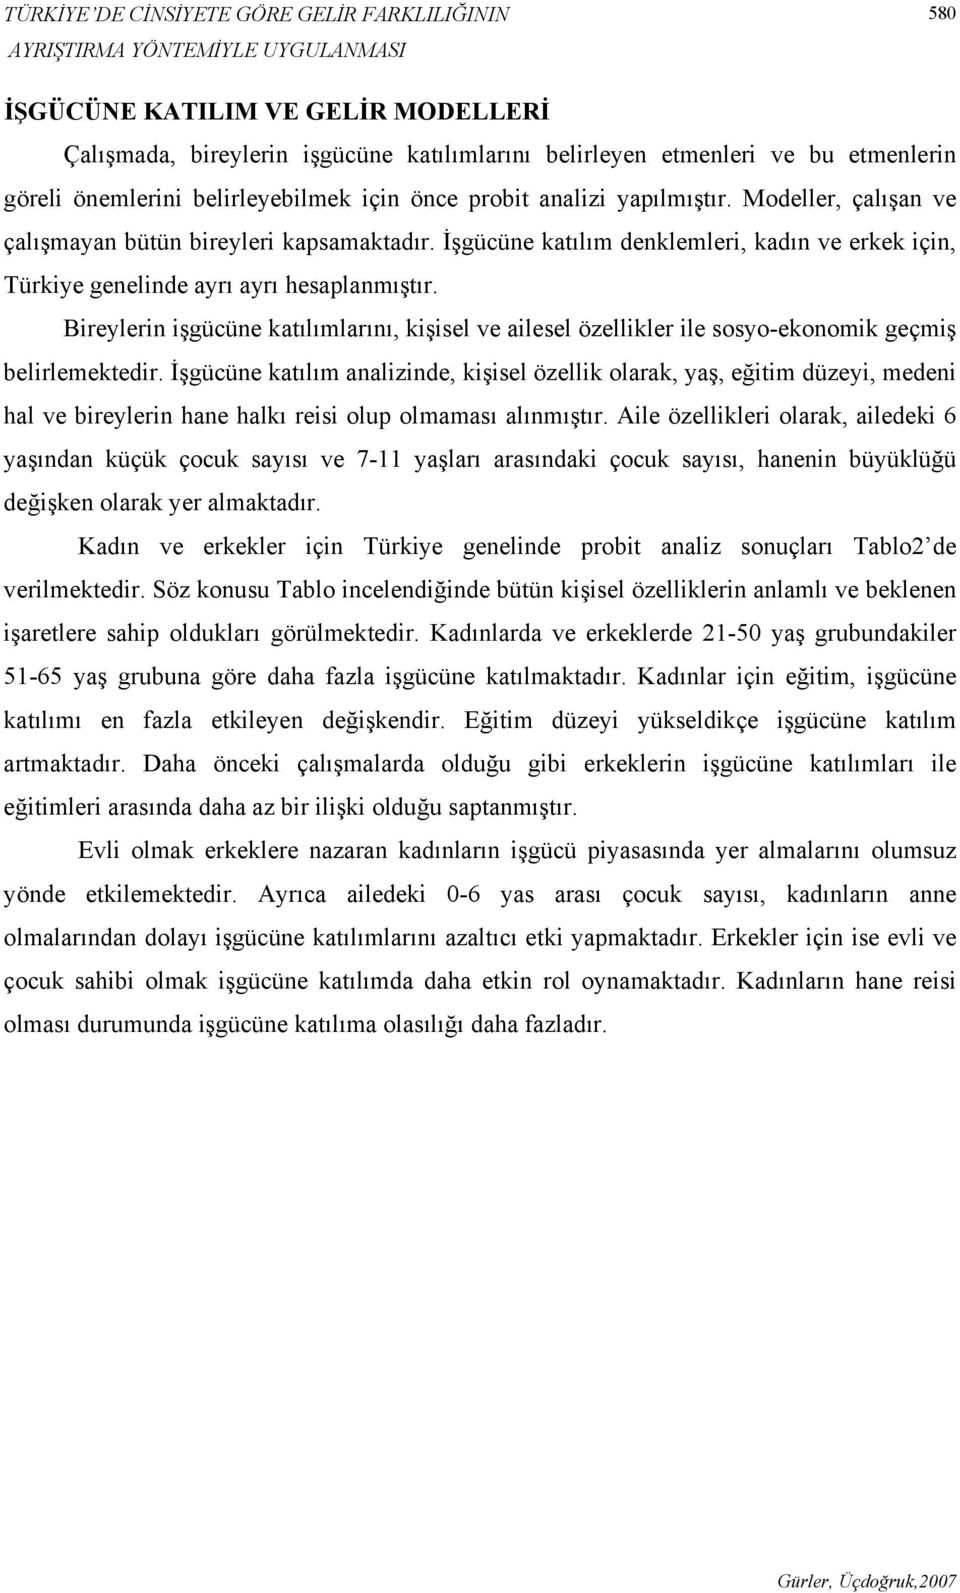 İşgücüne katılım denklemleri, kadın ve erkek için, Türkiye genelinde ayrı ayrı hesaplanmıştır.